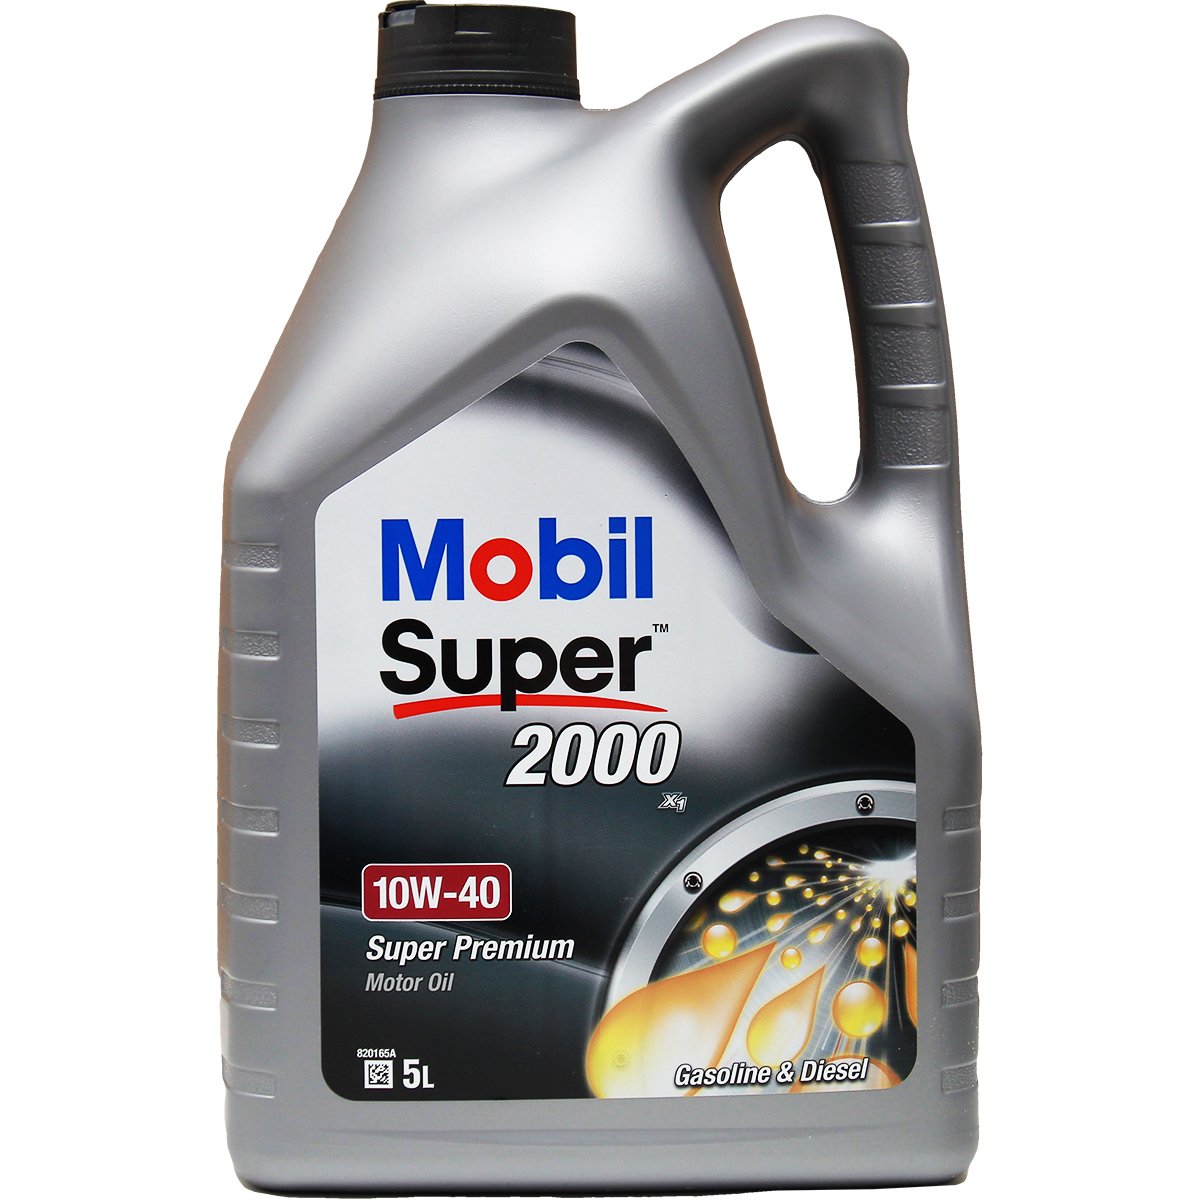 Mobil Super 2000 X1 10W-40 5+1 Liter